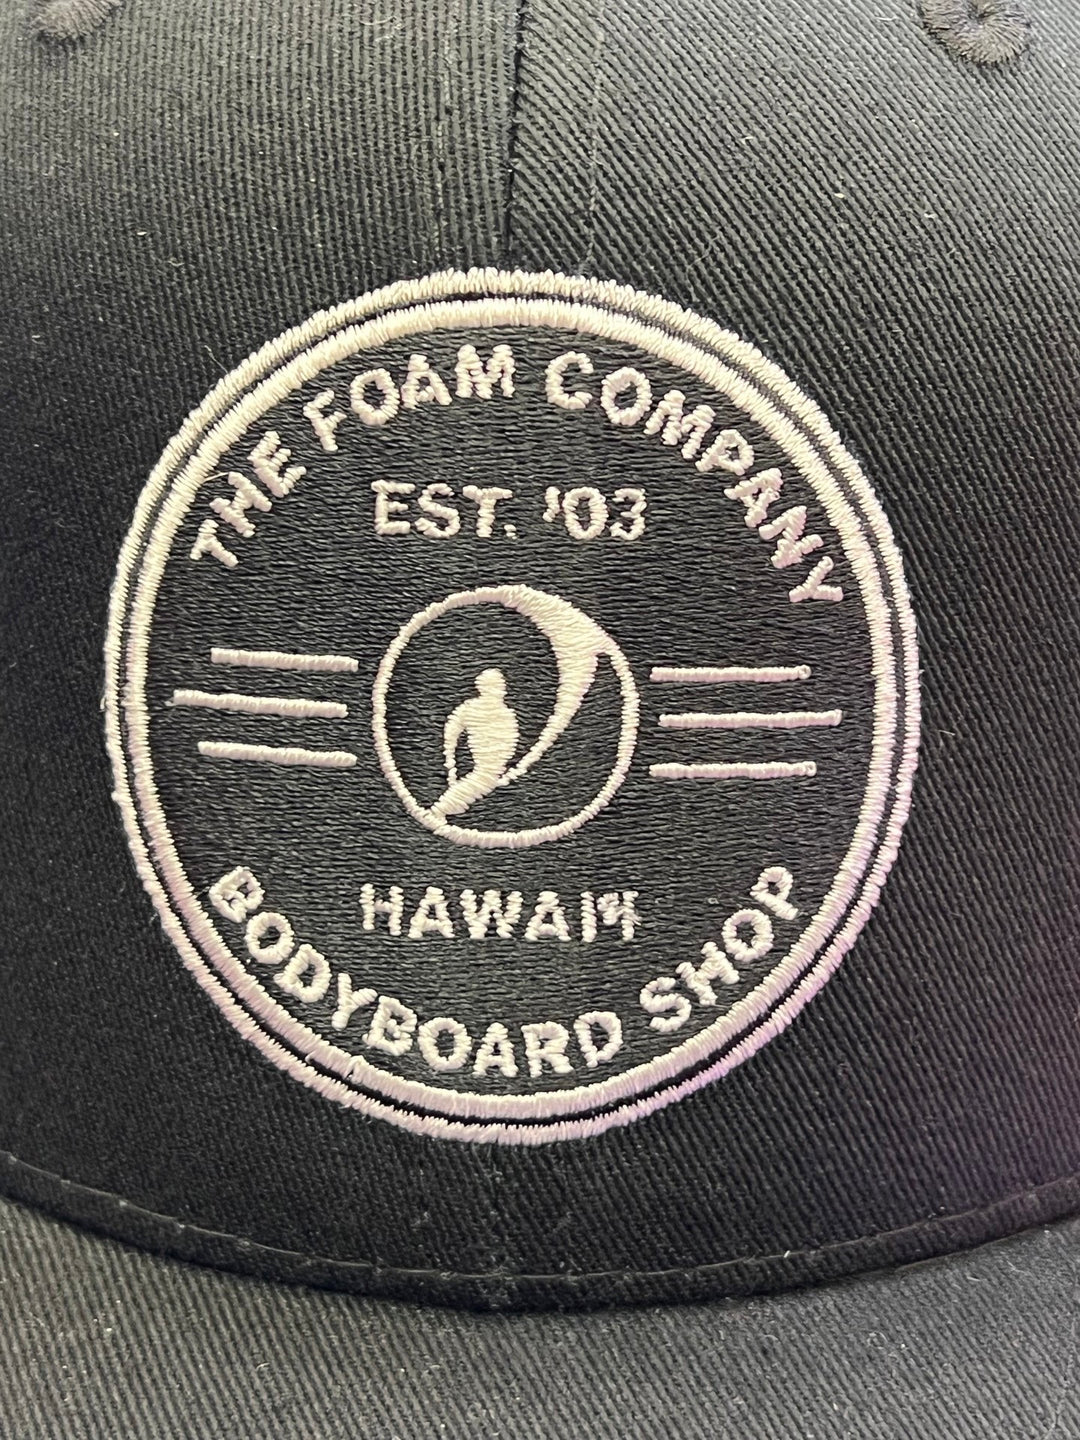 Foam Co FOAMCO PATCH Black Hat